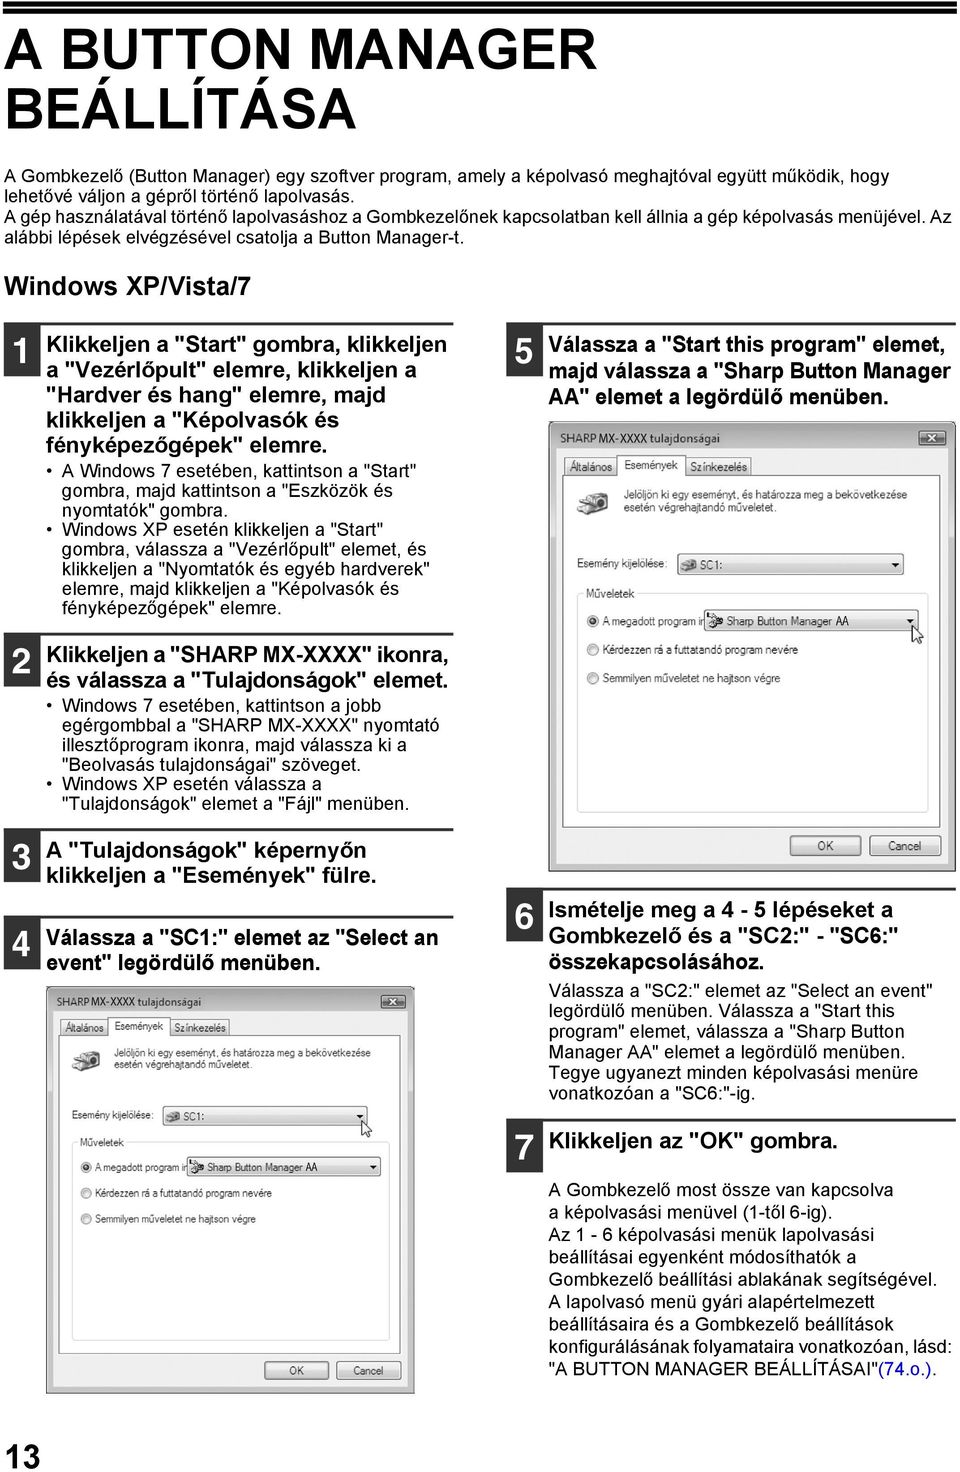 Windows XP/Vista/7 Klikkeljen a "Start" gombra, klikkeljen a "Vezérlőpult" elemre, klikkeljen a "Hardver és hang" elemre, majd klikkeljen a "Képolvasók és fényképezőgépek" elemre.